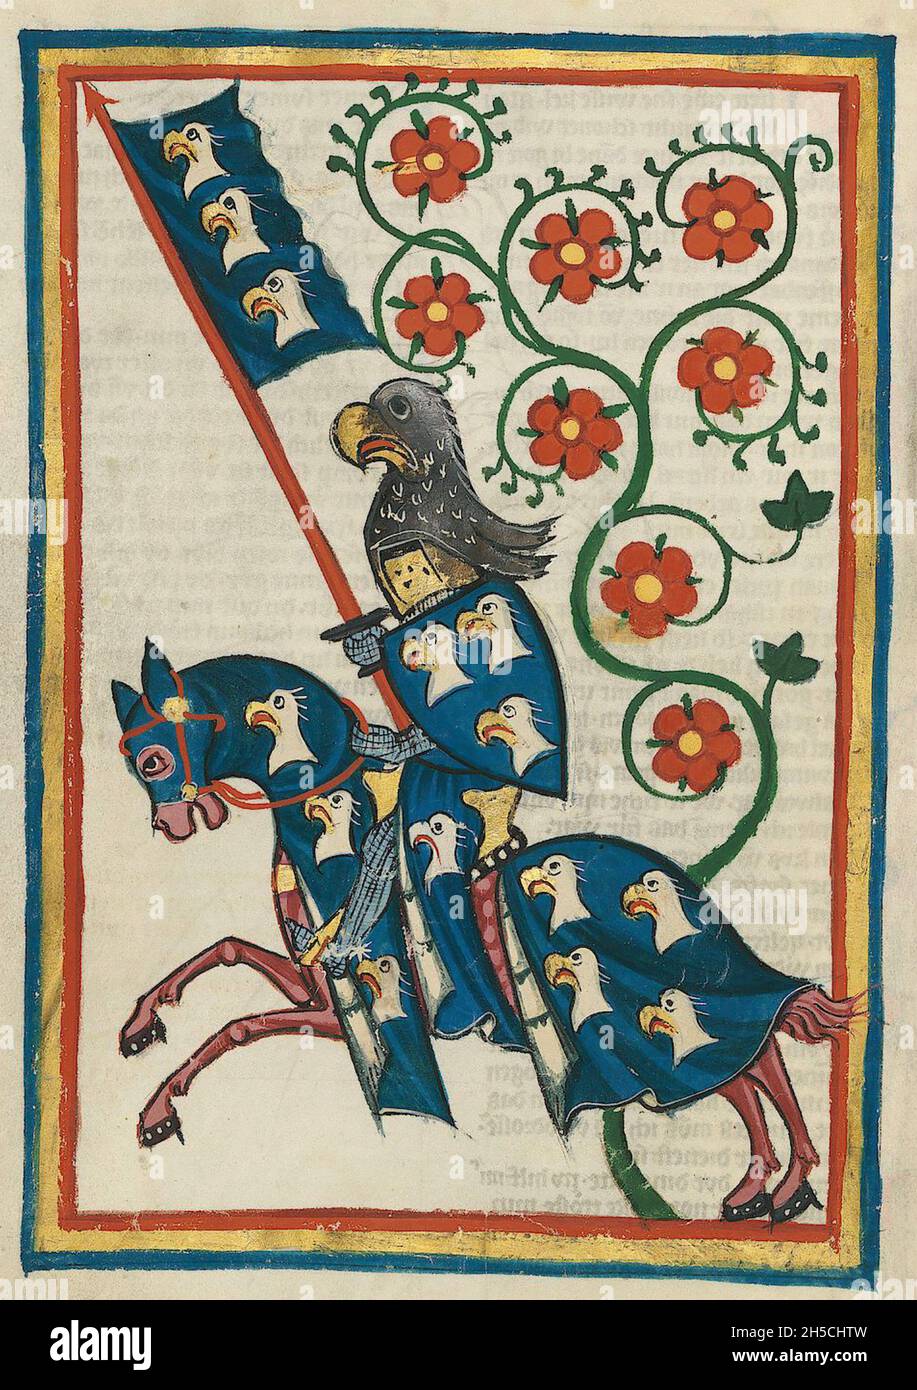 CODEX MANESSE eine deutsche Handschrift aus dem frühen bis mittleren 14. Jahrhundert, die Lieder enthält und das mittelalterliche Leben illustriert. Ein Ritter zeigt seinen Standard. Stockfoto